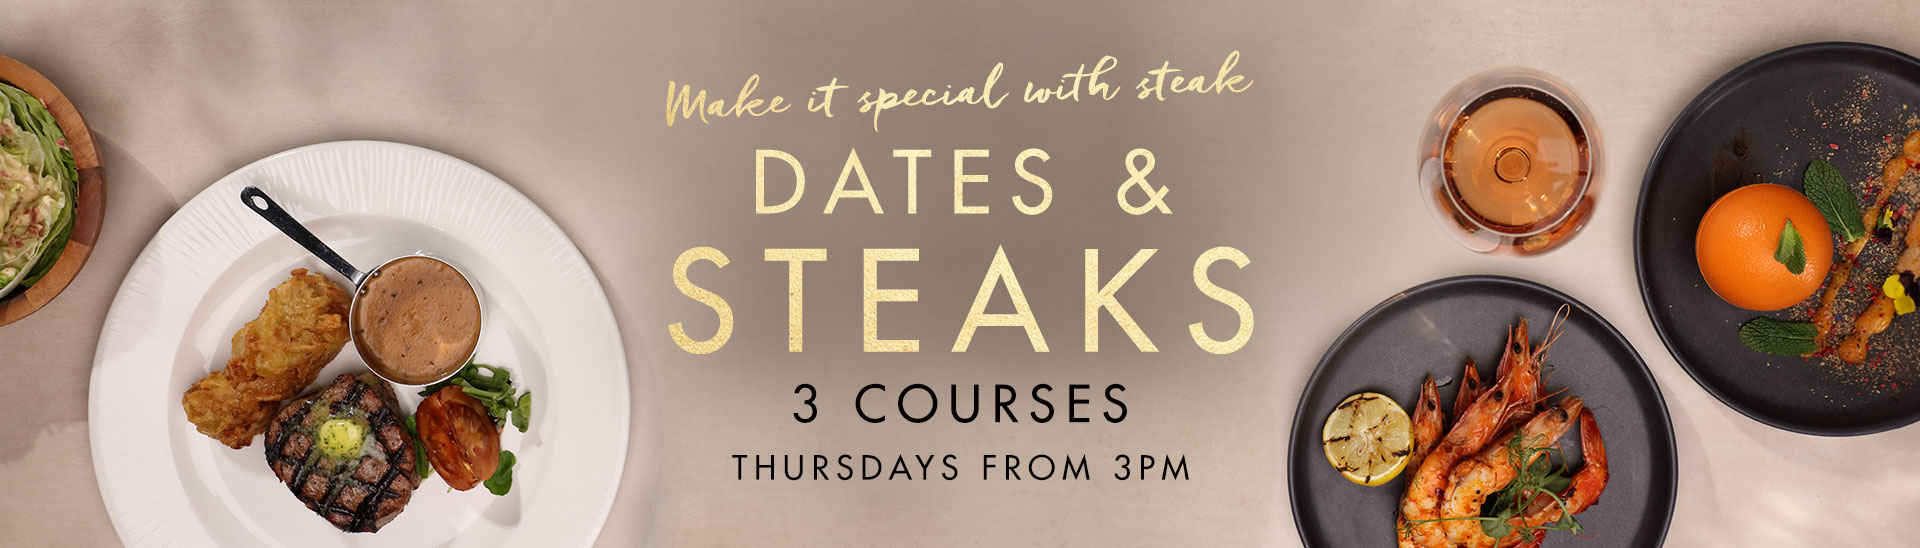 Dates & Steaks at Miller and Carter Stevenage